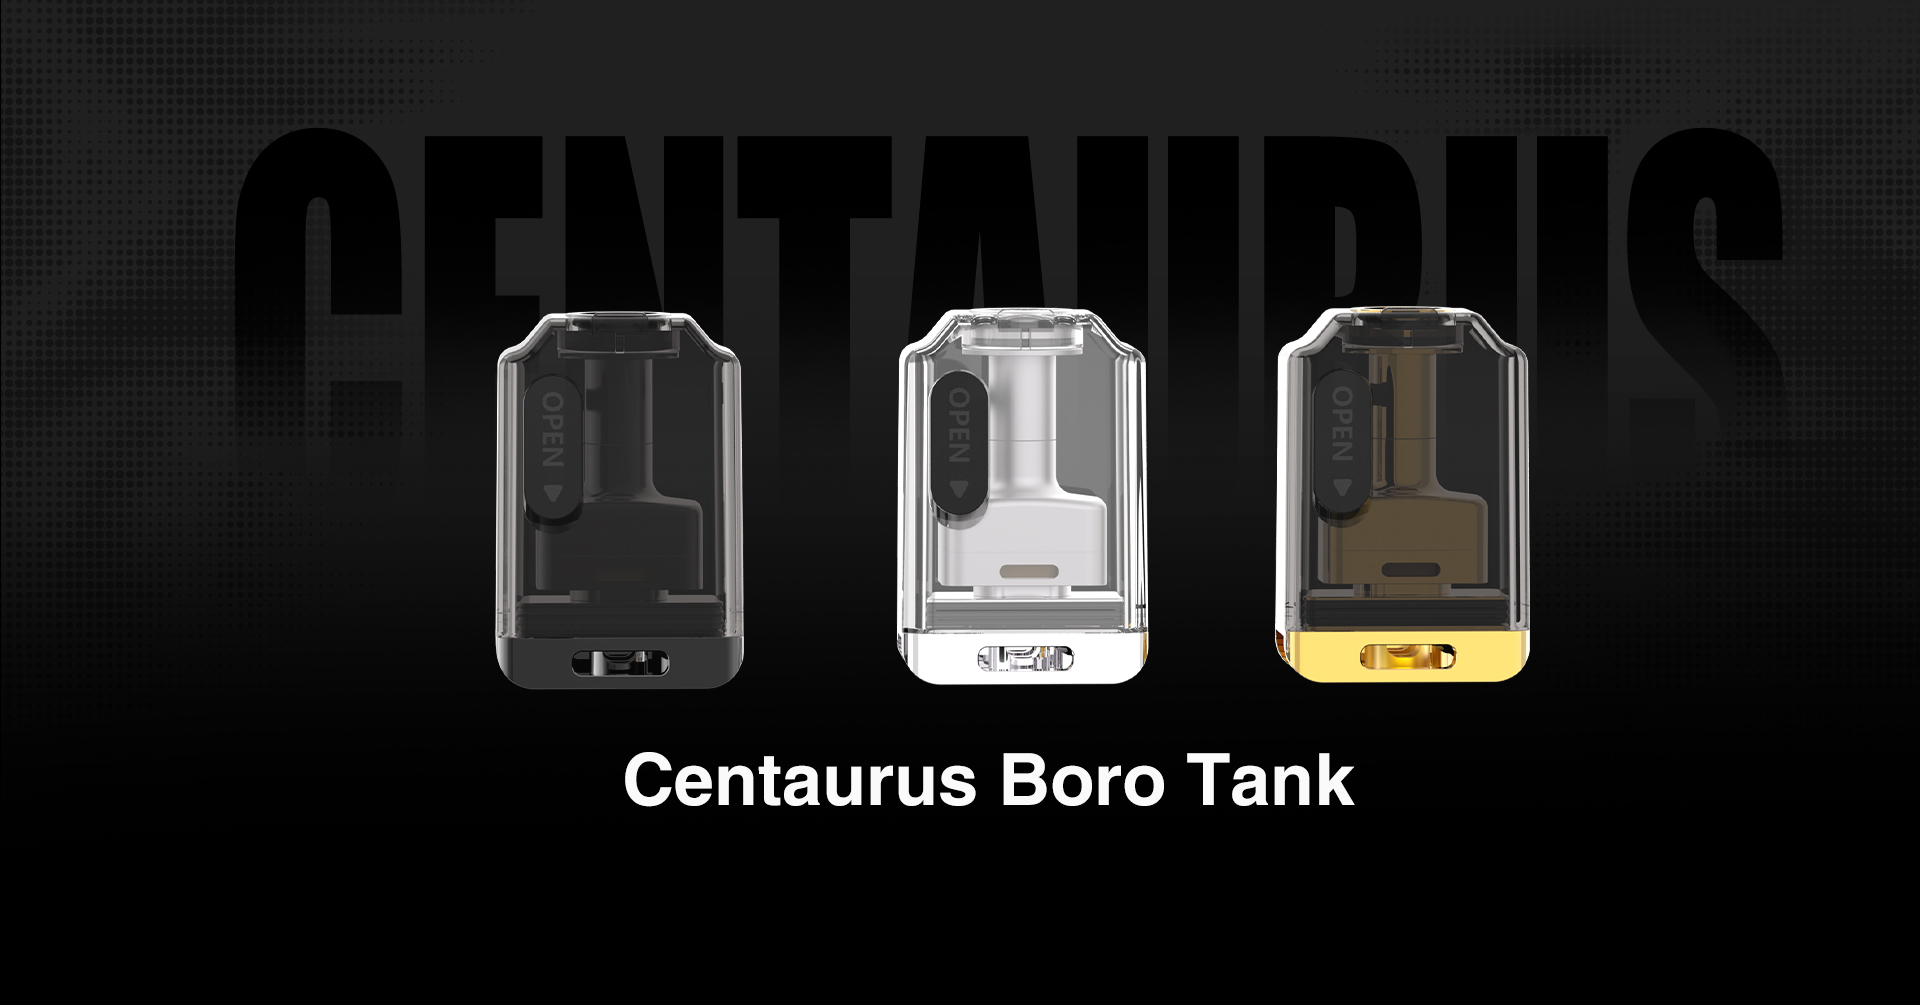 Lost Vape Centaurus B80 AIO Kit